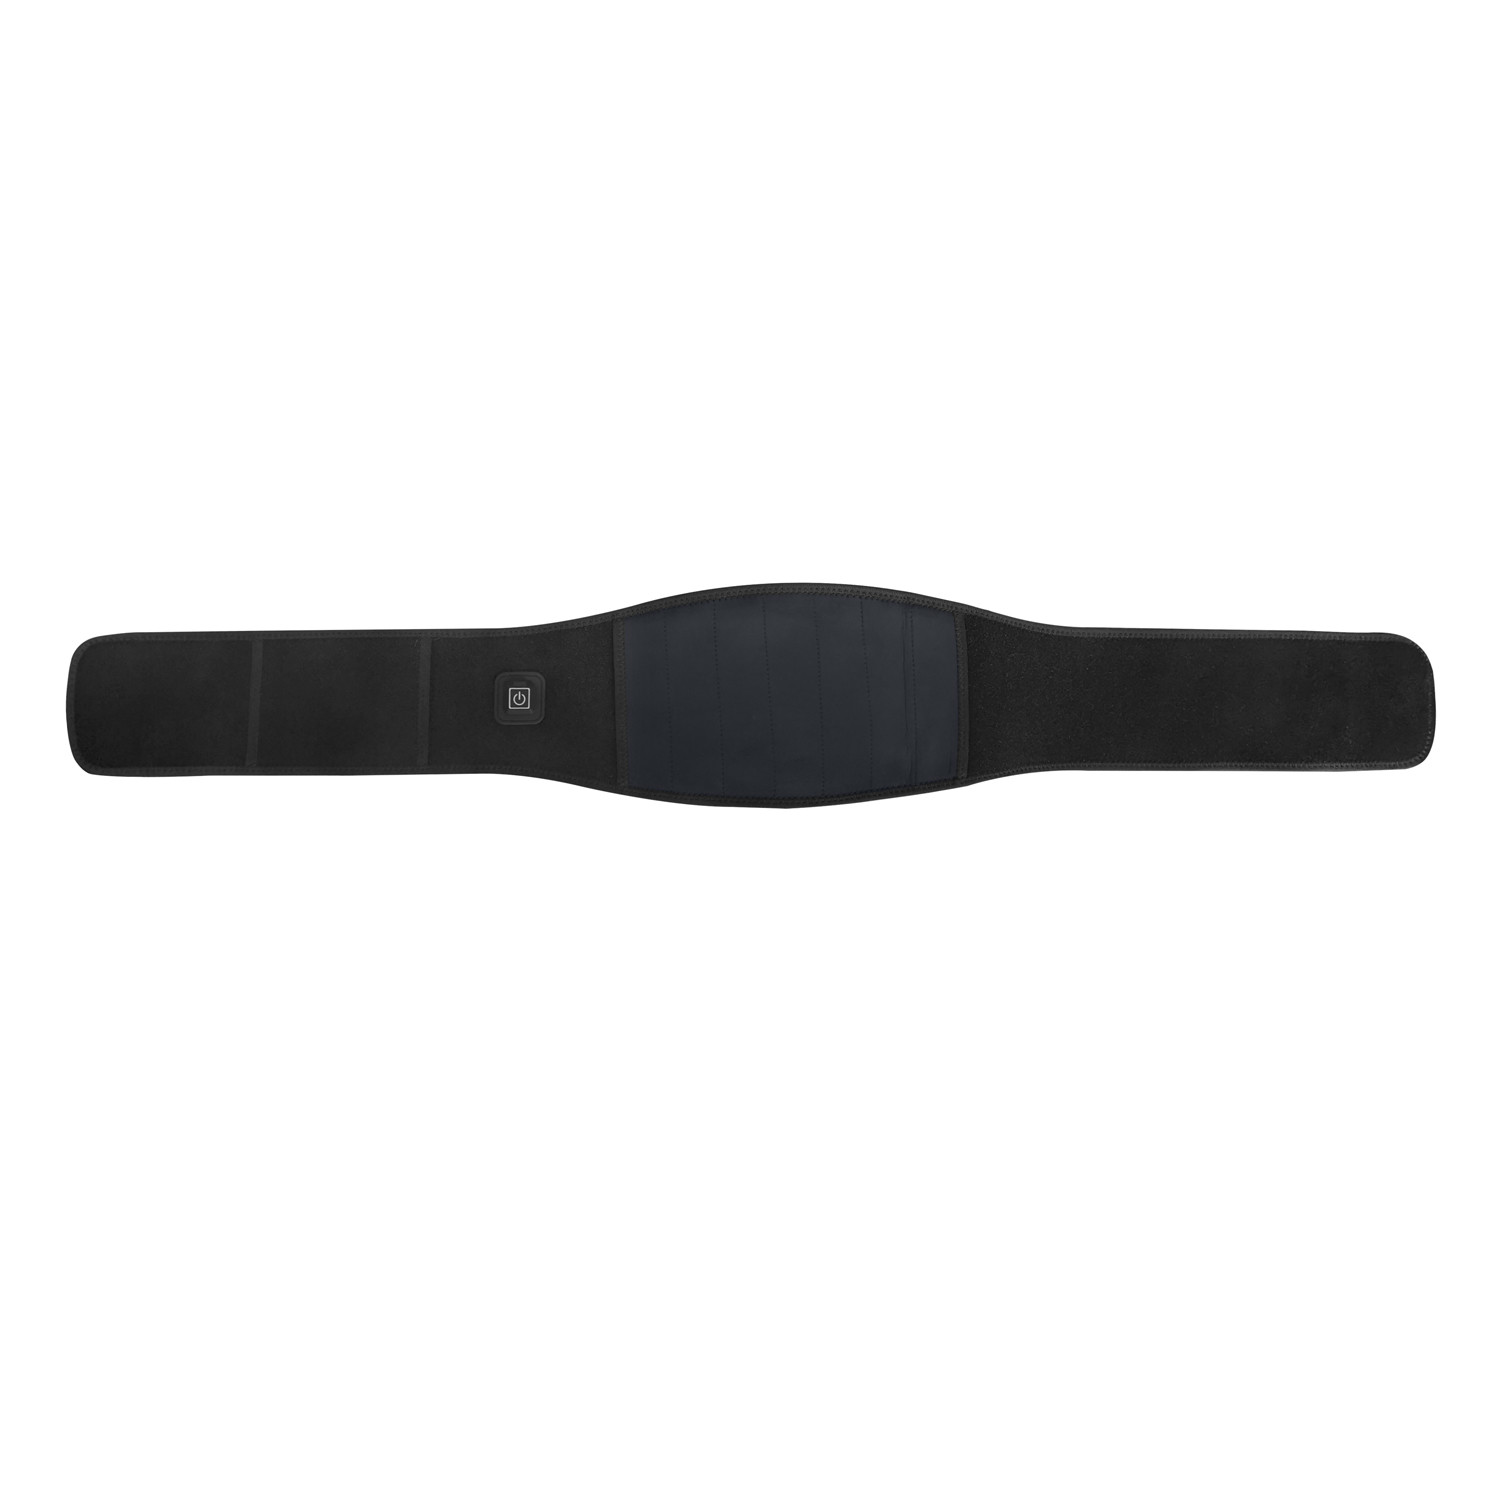 Heated waist belt for Waist Health Care Adjustable Rechargeable Lumbar Waist Brace Massage Band Back Support Belt